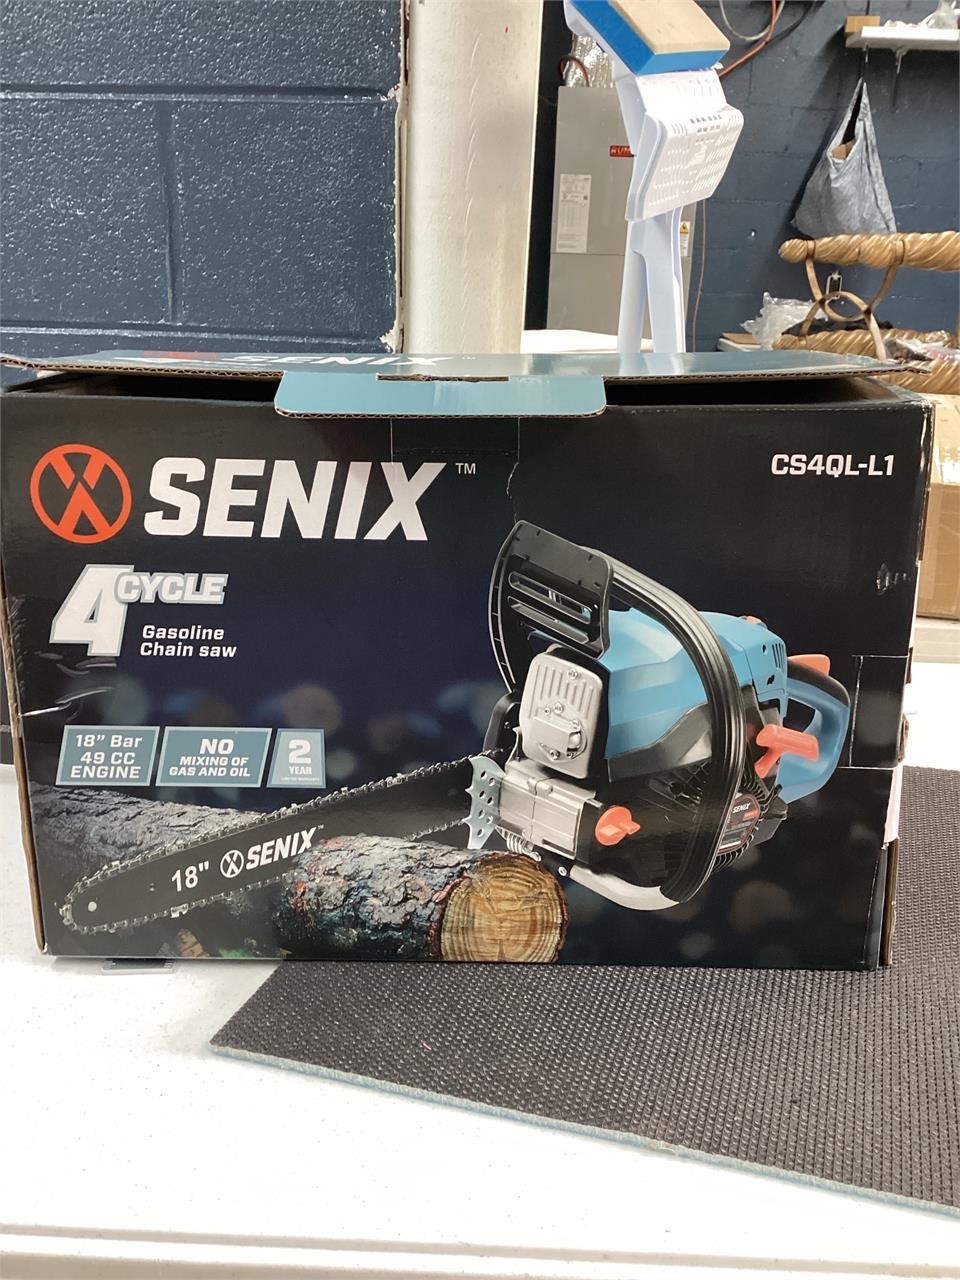 Senix 4 cycle gas chain saw